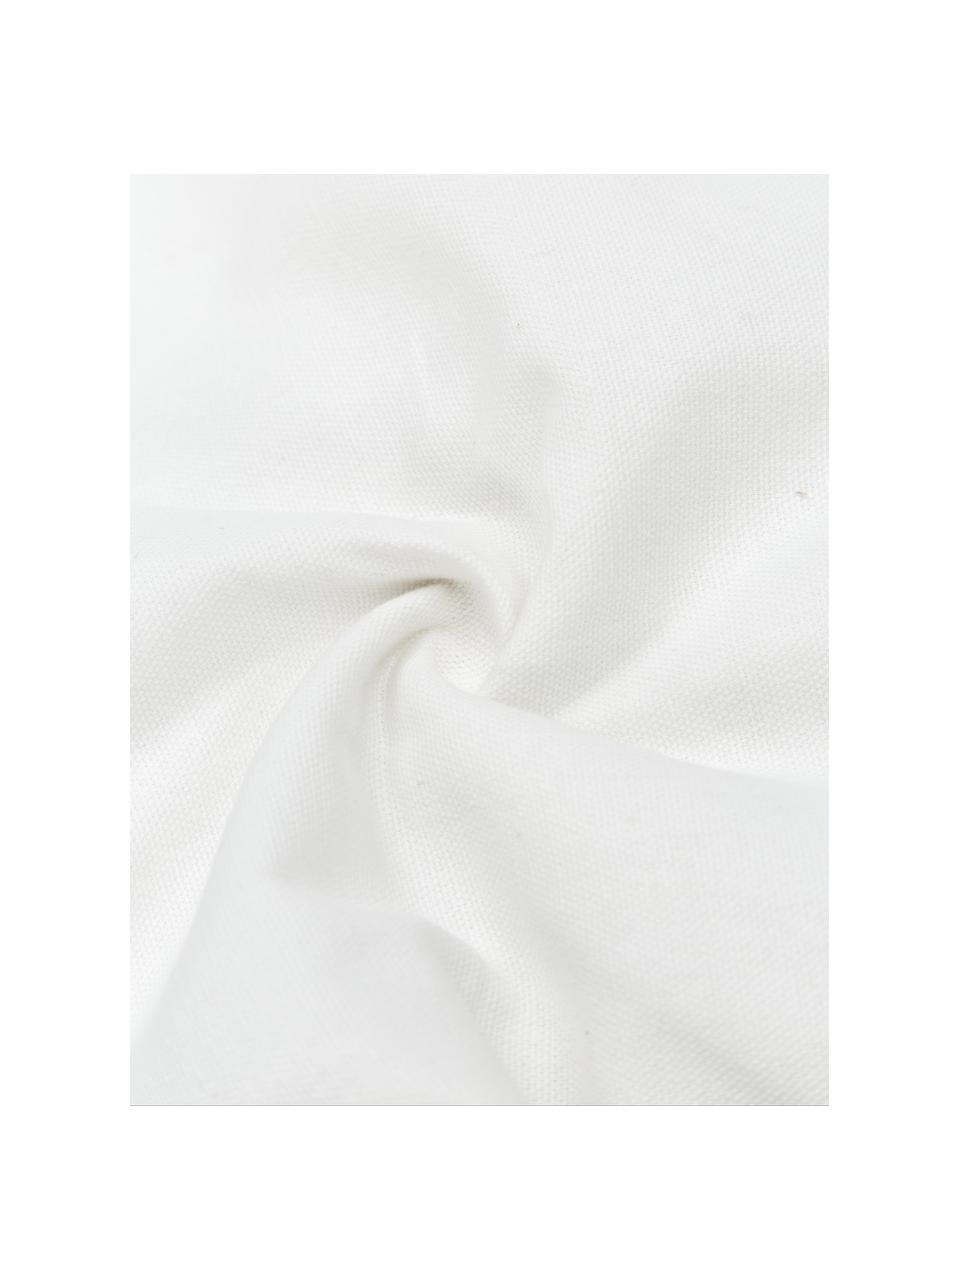 Baumwoll-Kissenhülle Viale mit Quasten, 100% Baumwolle, Weiß, Beige, B 40 x L 60 cm